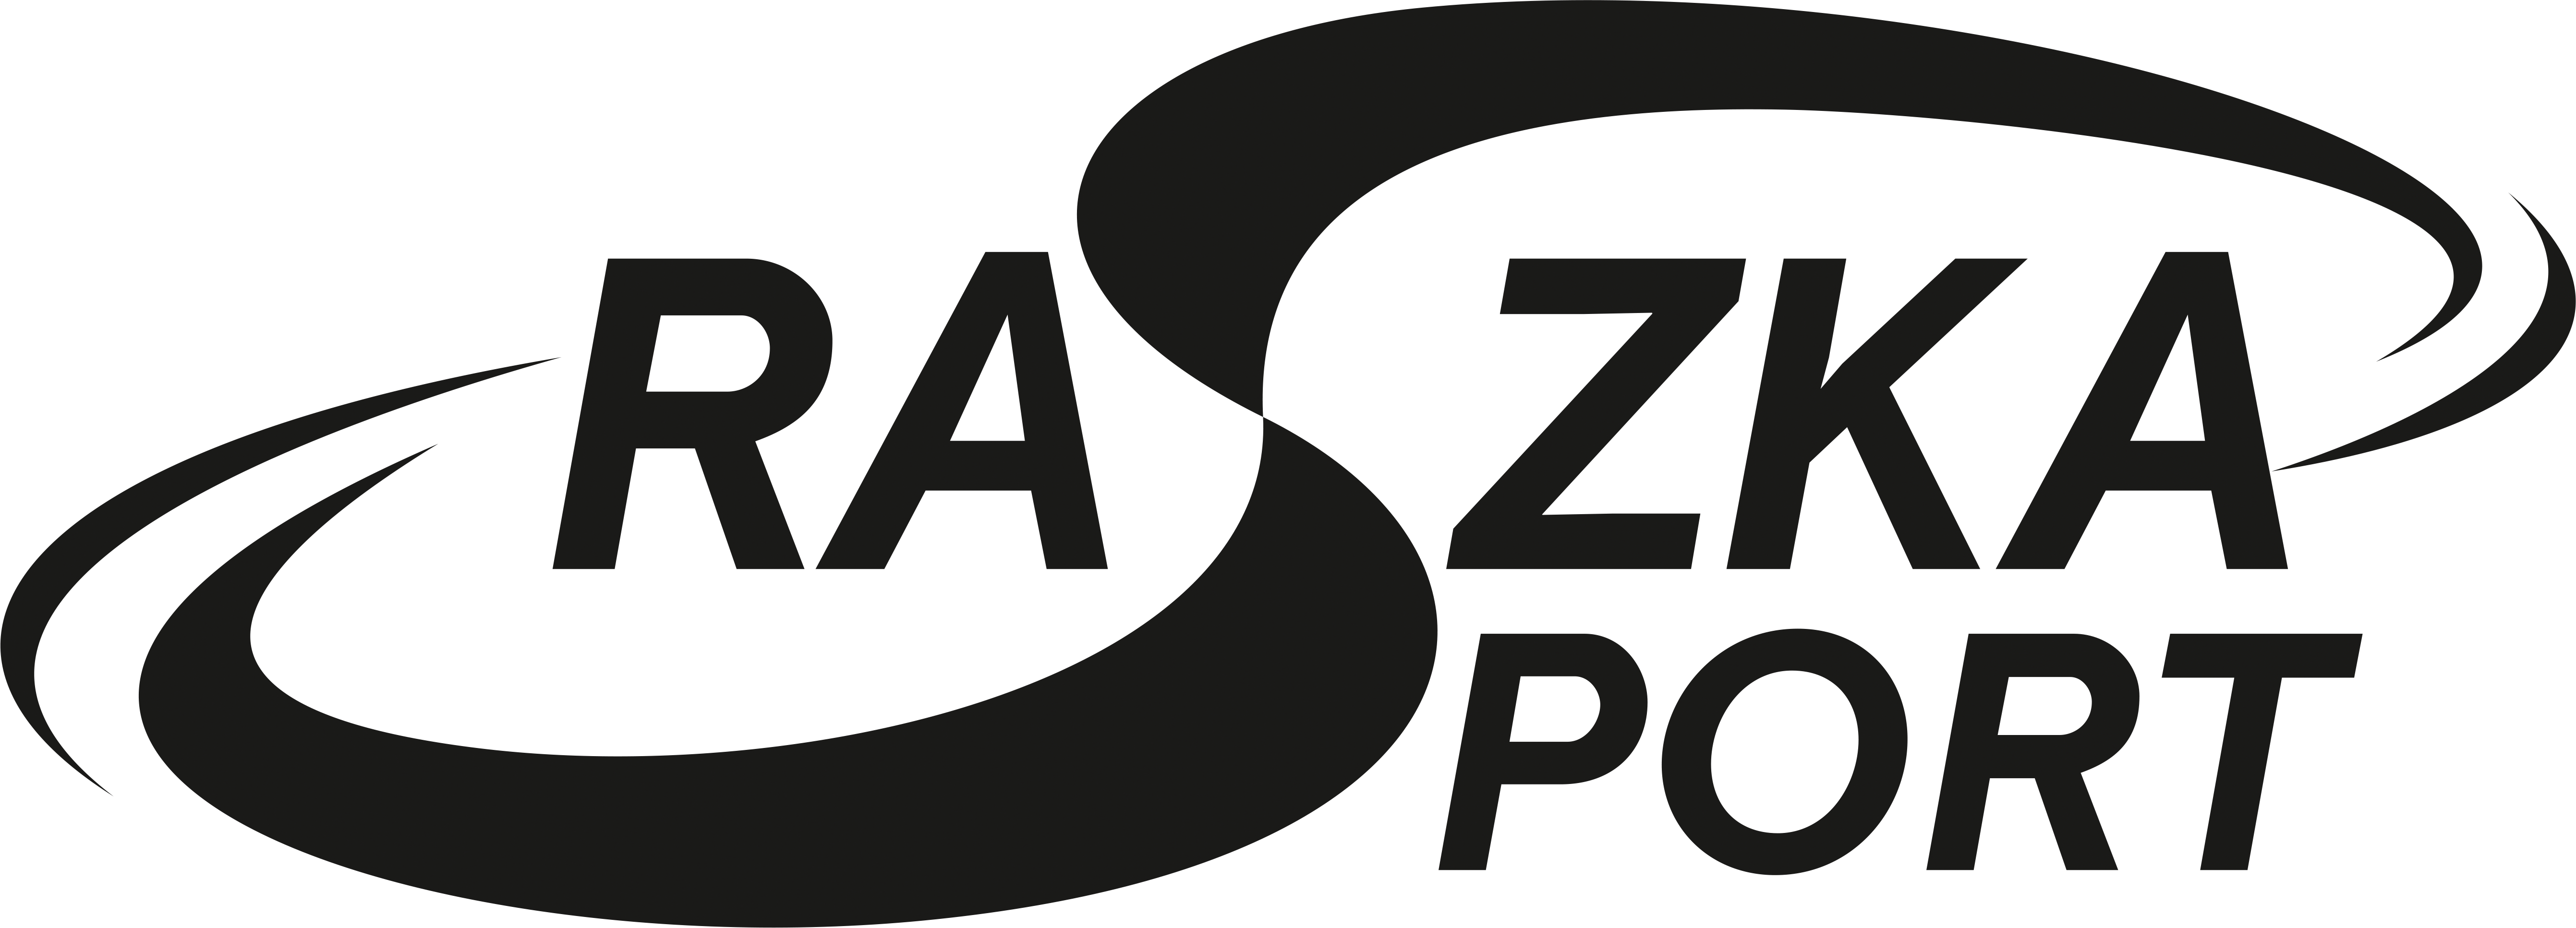 Raszka sport logo